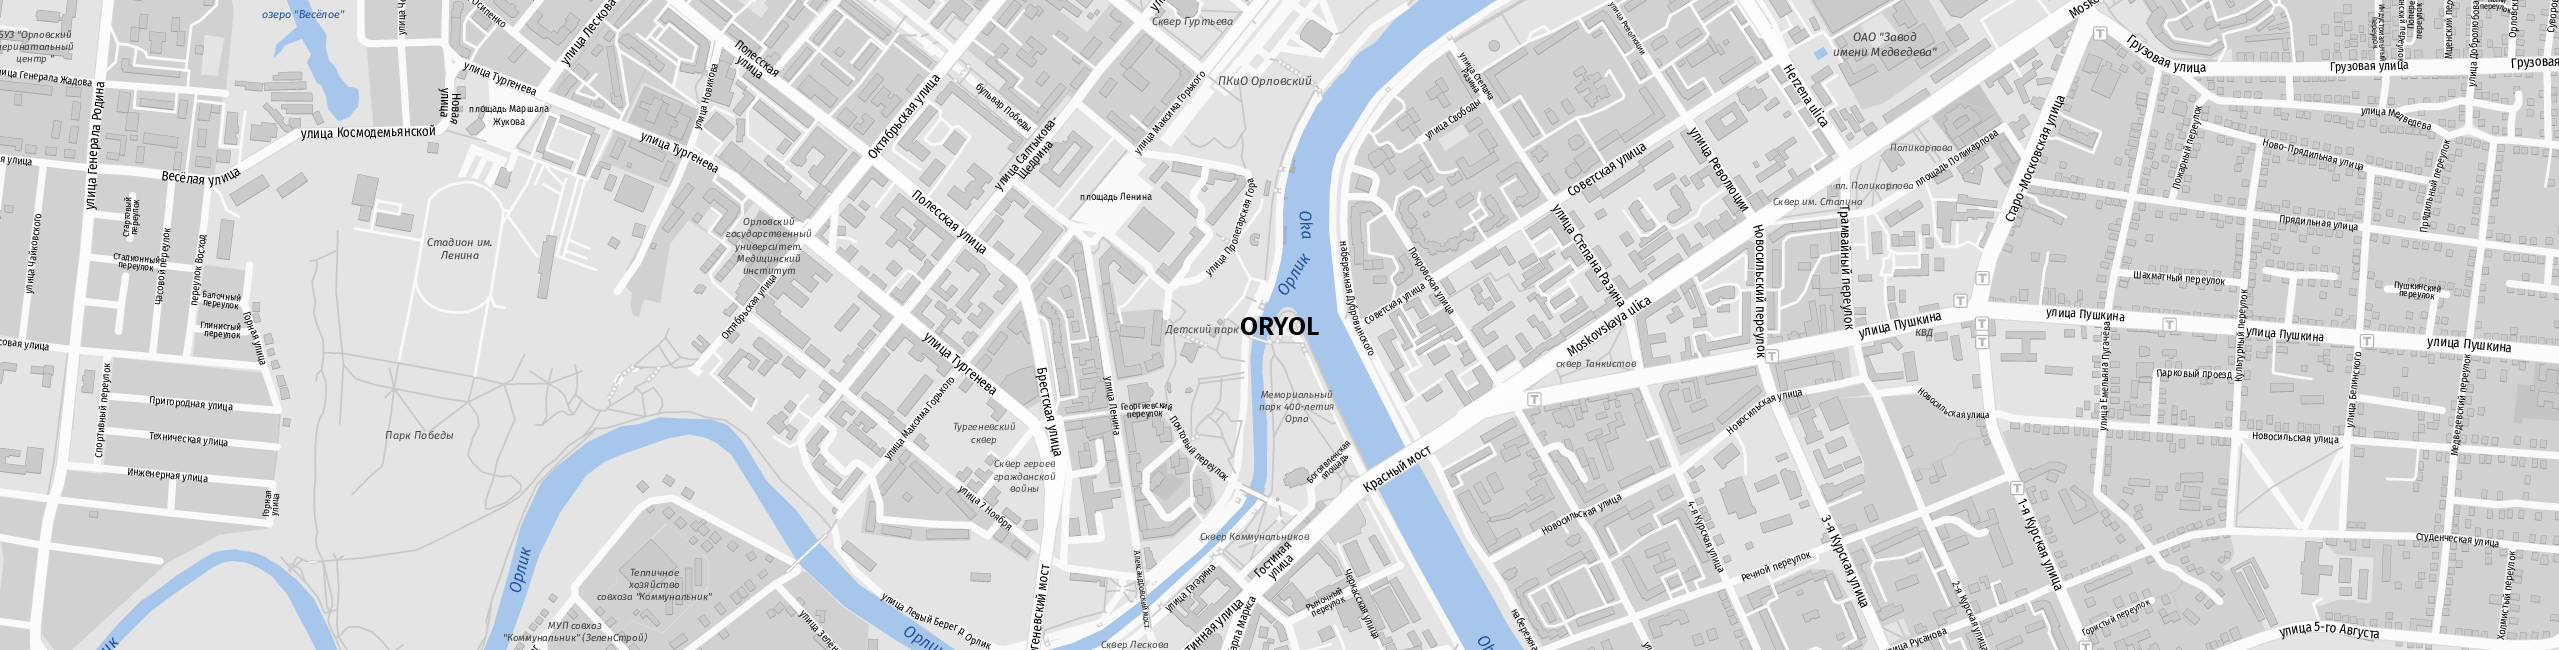 Stadtplan Oryol zum Downloaden.